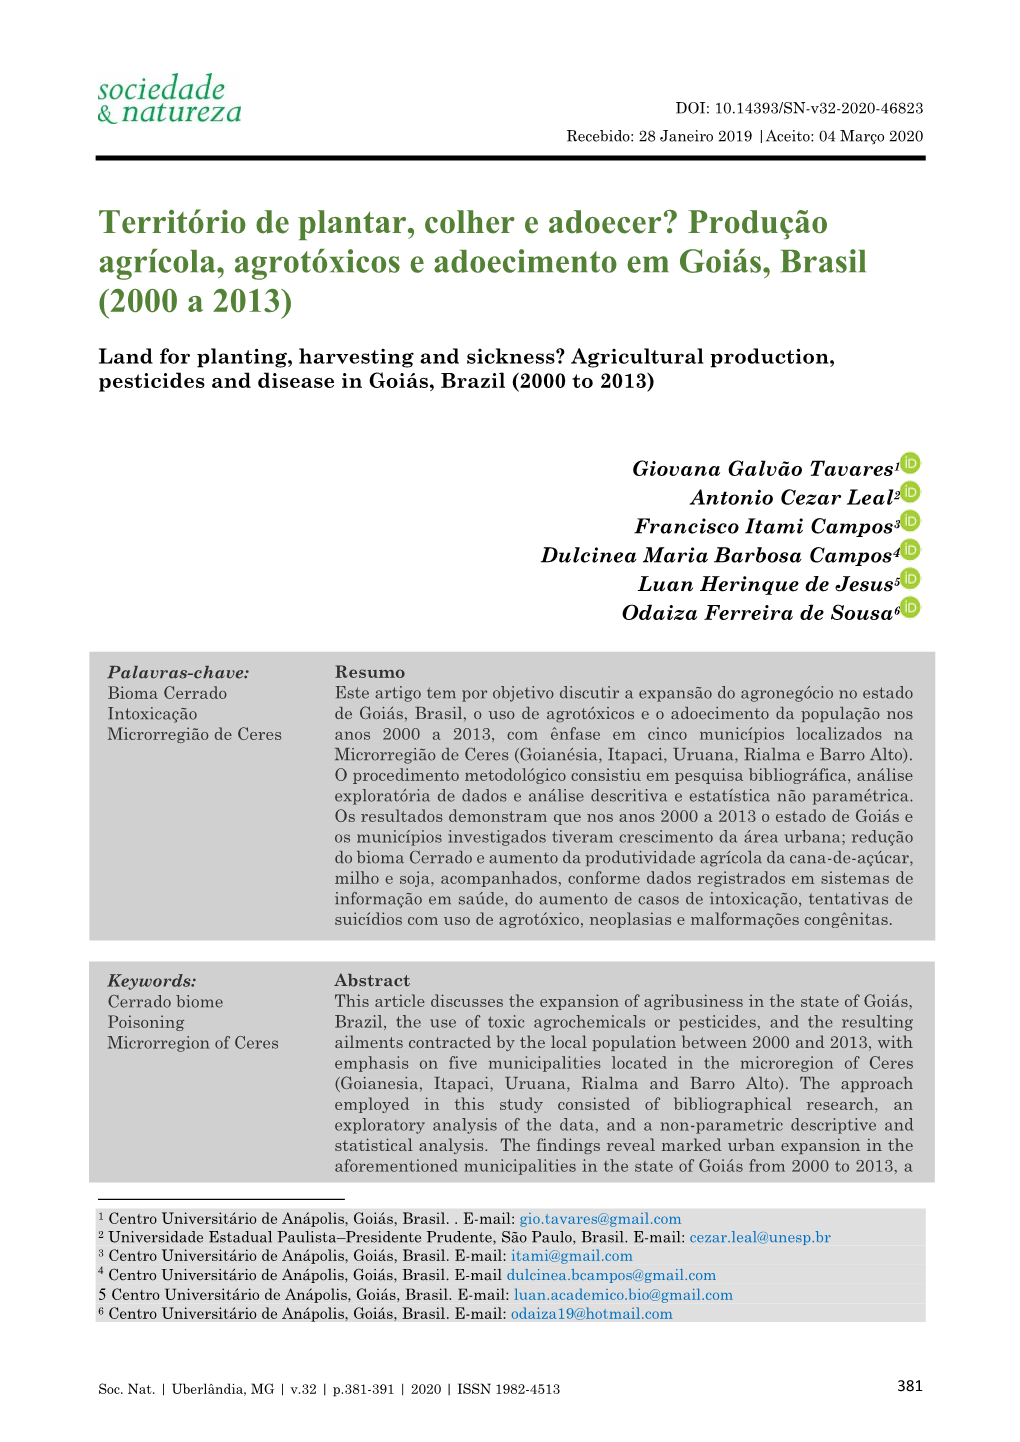 Produção Agrícola, Agrotóxicos E Adoecimento Em Goiás, Brasil (2000 a 2013)